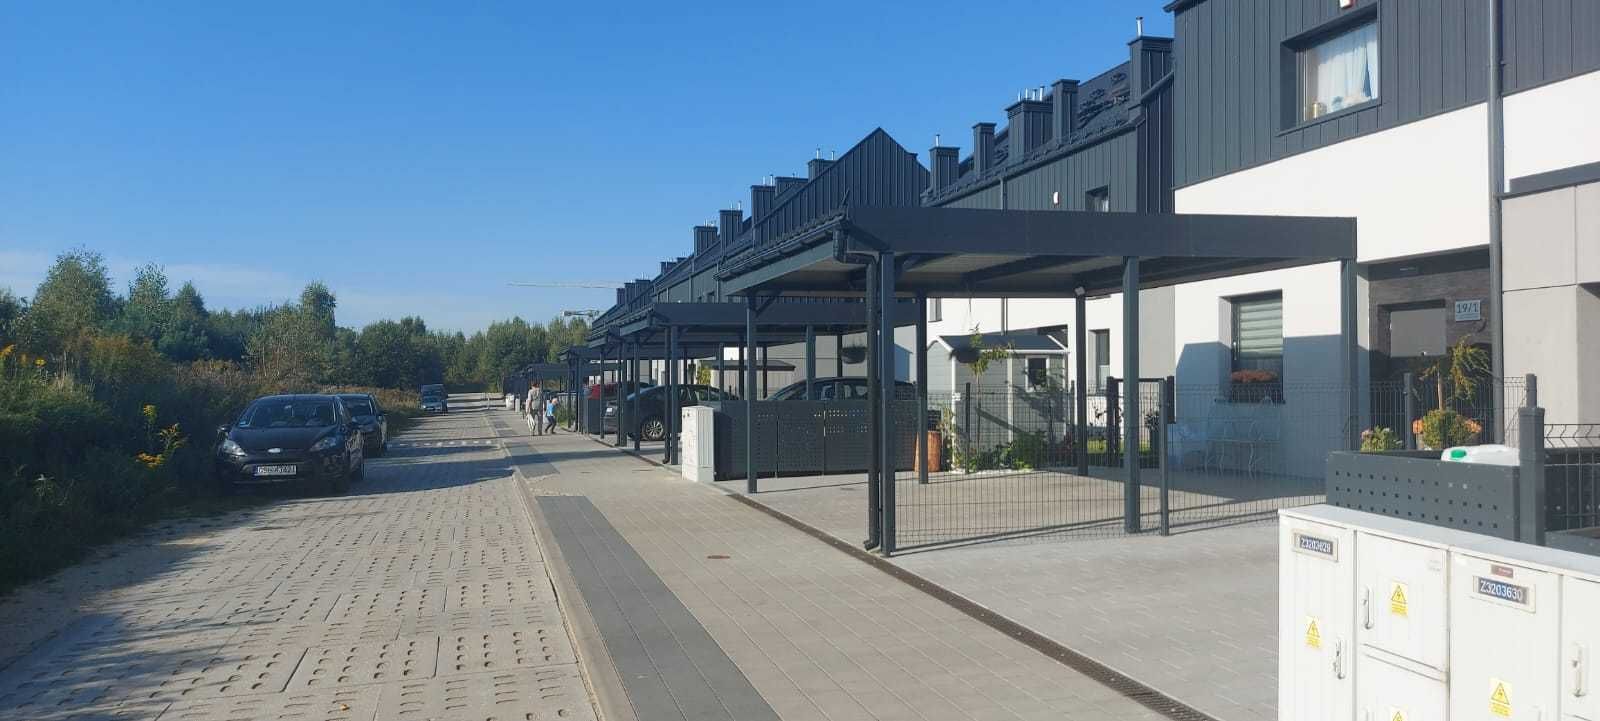 Wiata garażowa Dwustanowiskowa 5 x 5 m - Carport, Zadaszenie, Altana